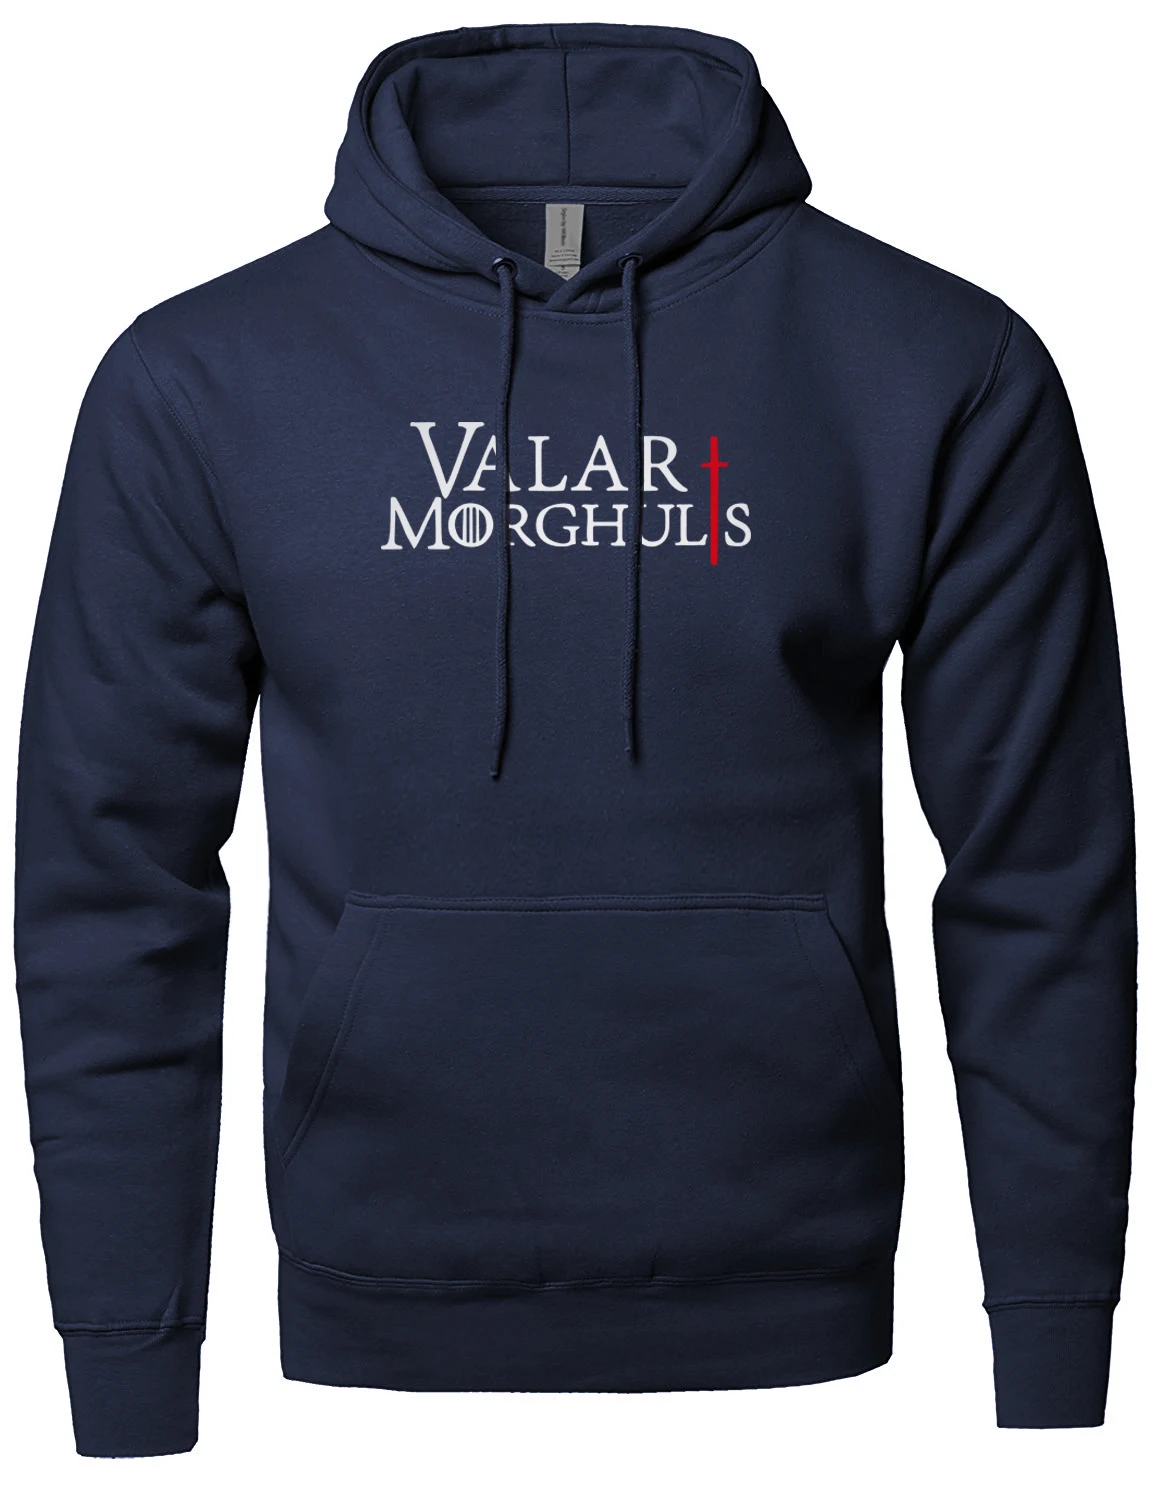 Valar Morghulis/мужская толстовка с надписью «Игра престолов», мужская Толстовка на весну и зиму, новая теплая флисовая толстовка с капюшоном для мужчин, sudadera hombre - Цвет: dark blue